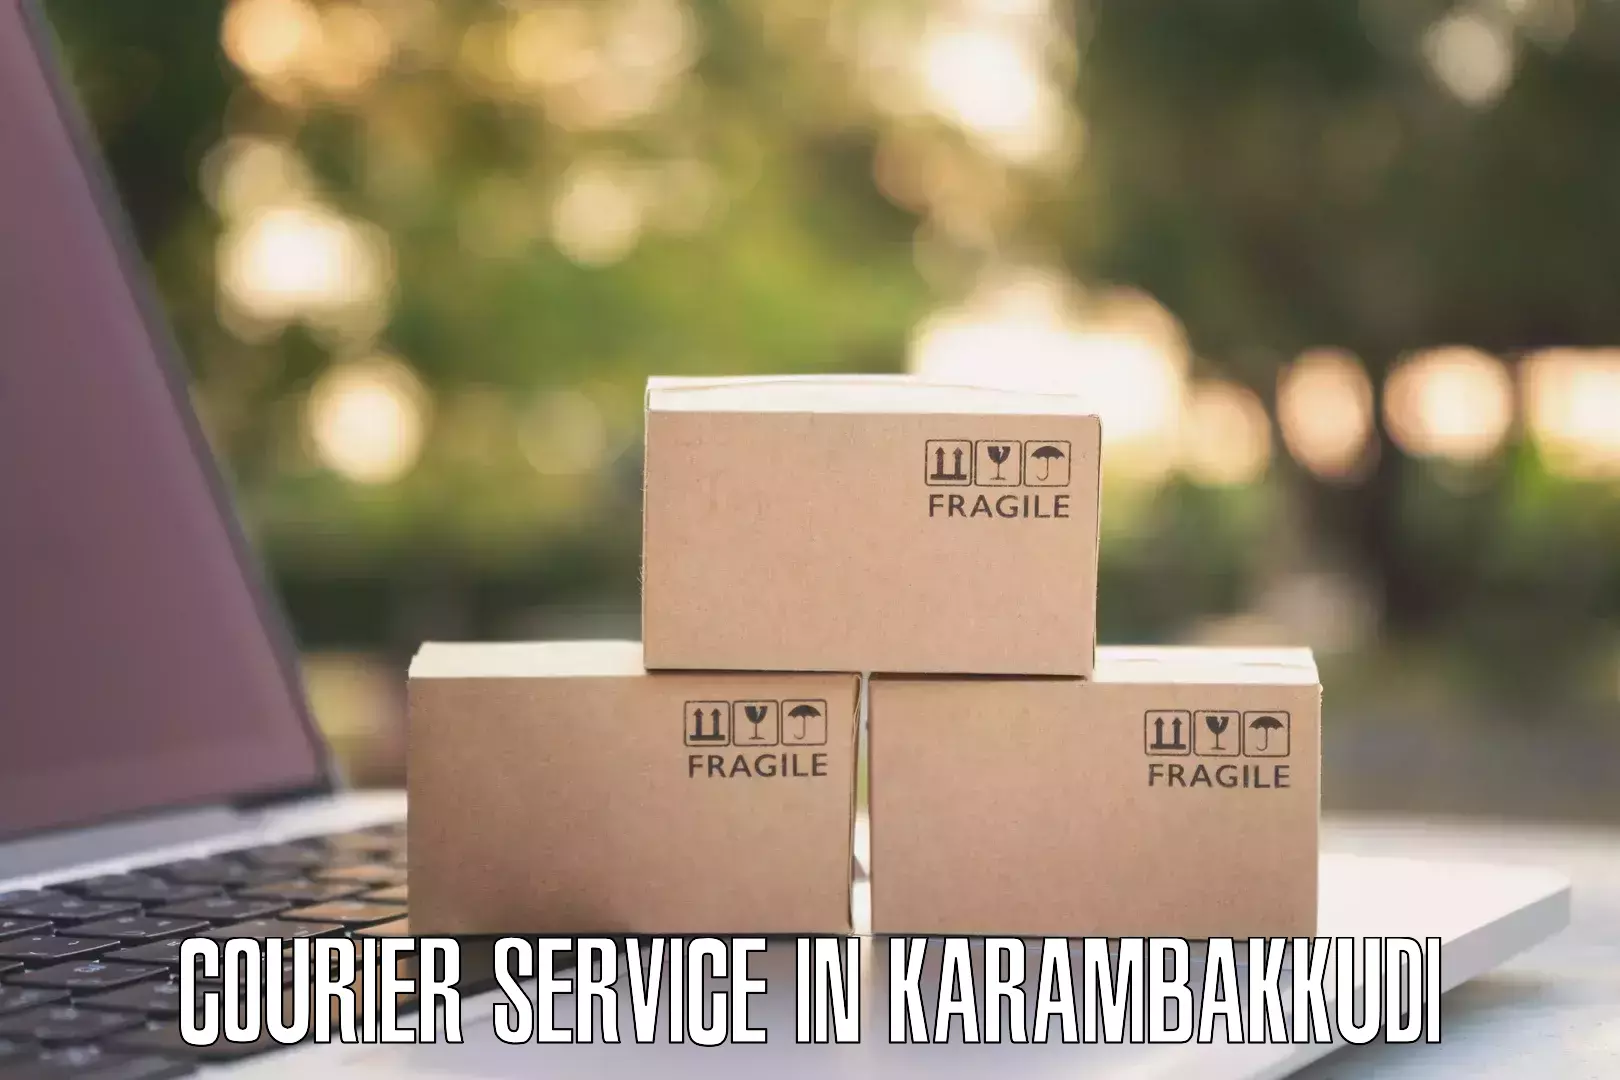 Wholesale parcel delivery in Karambakkudi